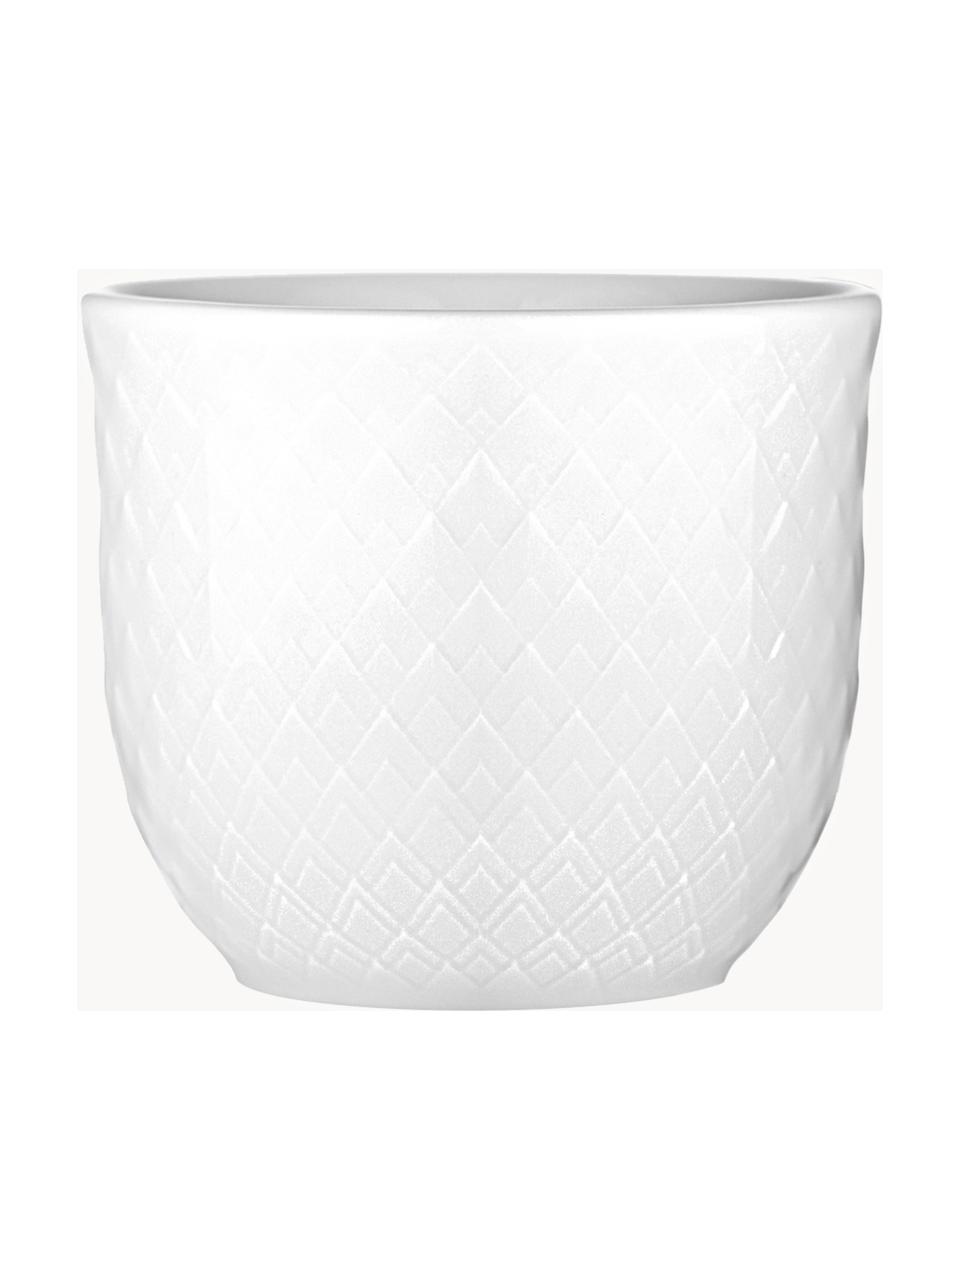 Porzellan-Eierbecher Rhombe mit strukturierter Oberfläche, 2 Stück, Porzellan, Weiss, Ø 5 x H 5 cm